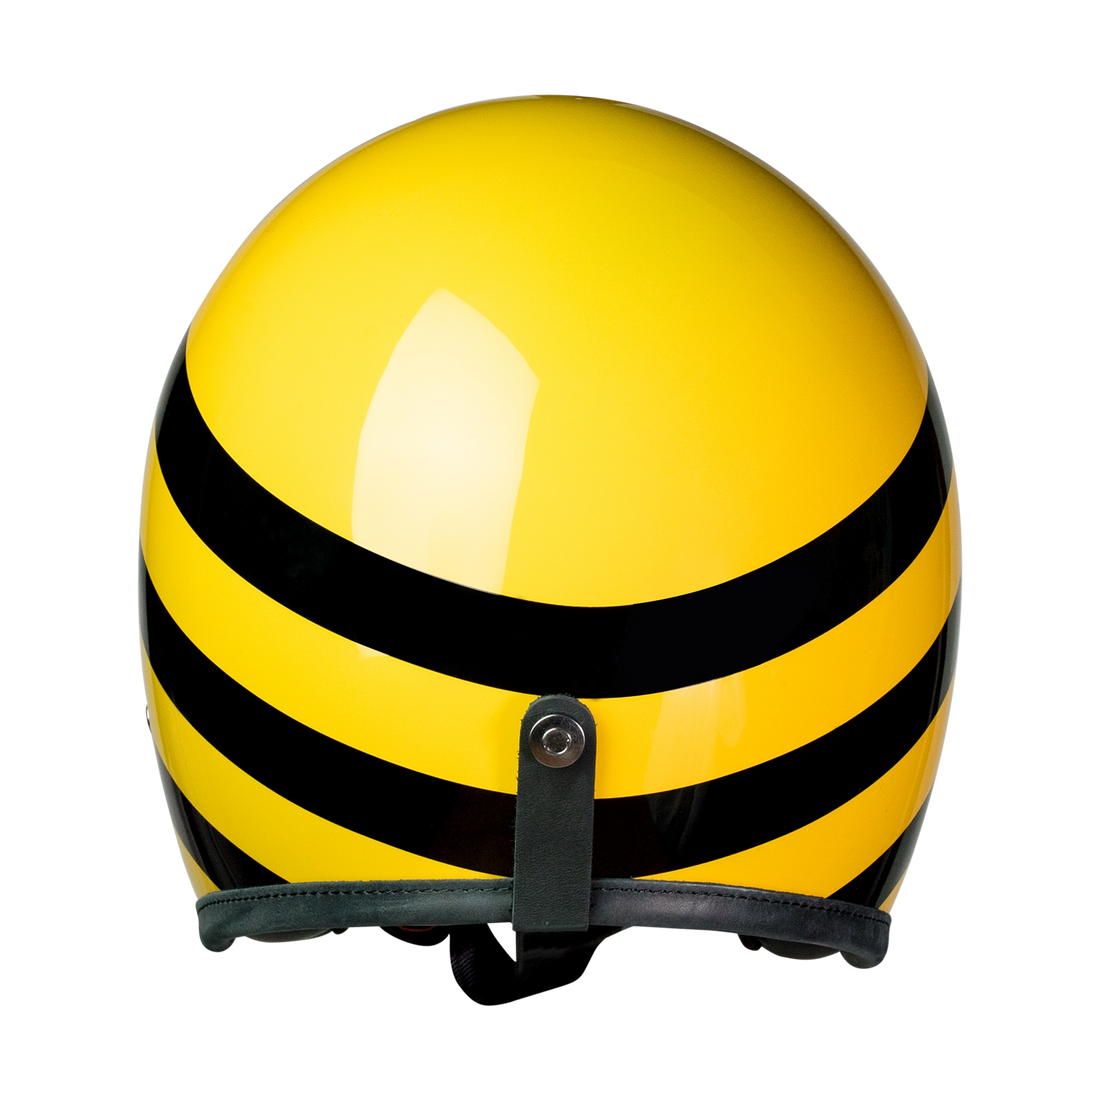 Hedonist Bumble Bee - HEDON